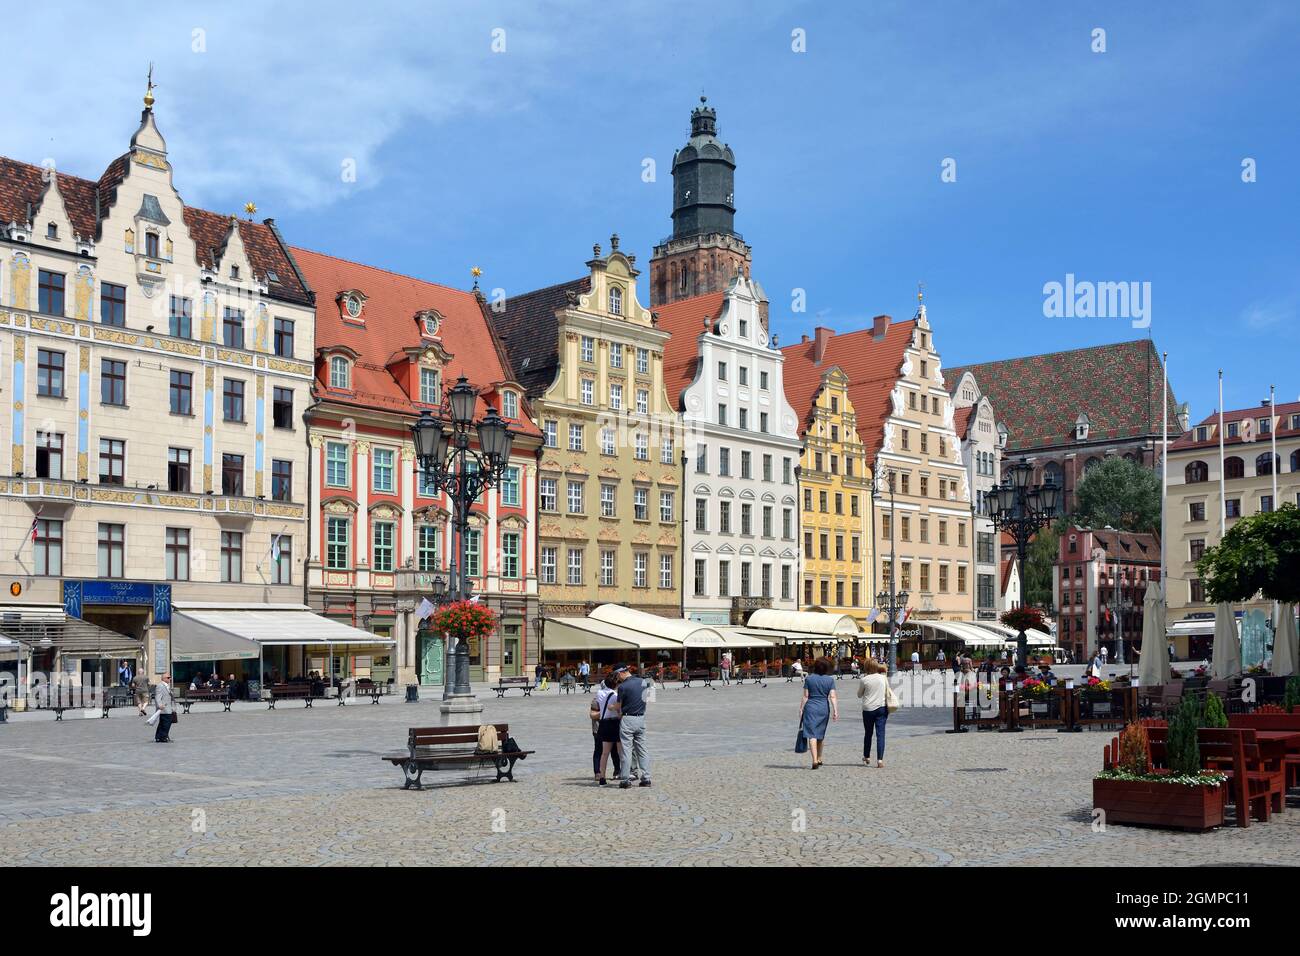 Breslau, Niederschlesien, Polen - 16. Juni 2016: Platz auf dem Marktplatz in der Altstadt von Breslau. Stockfoto